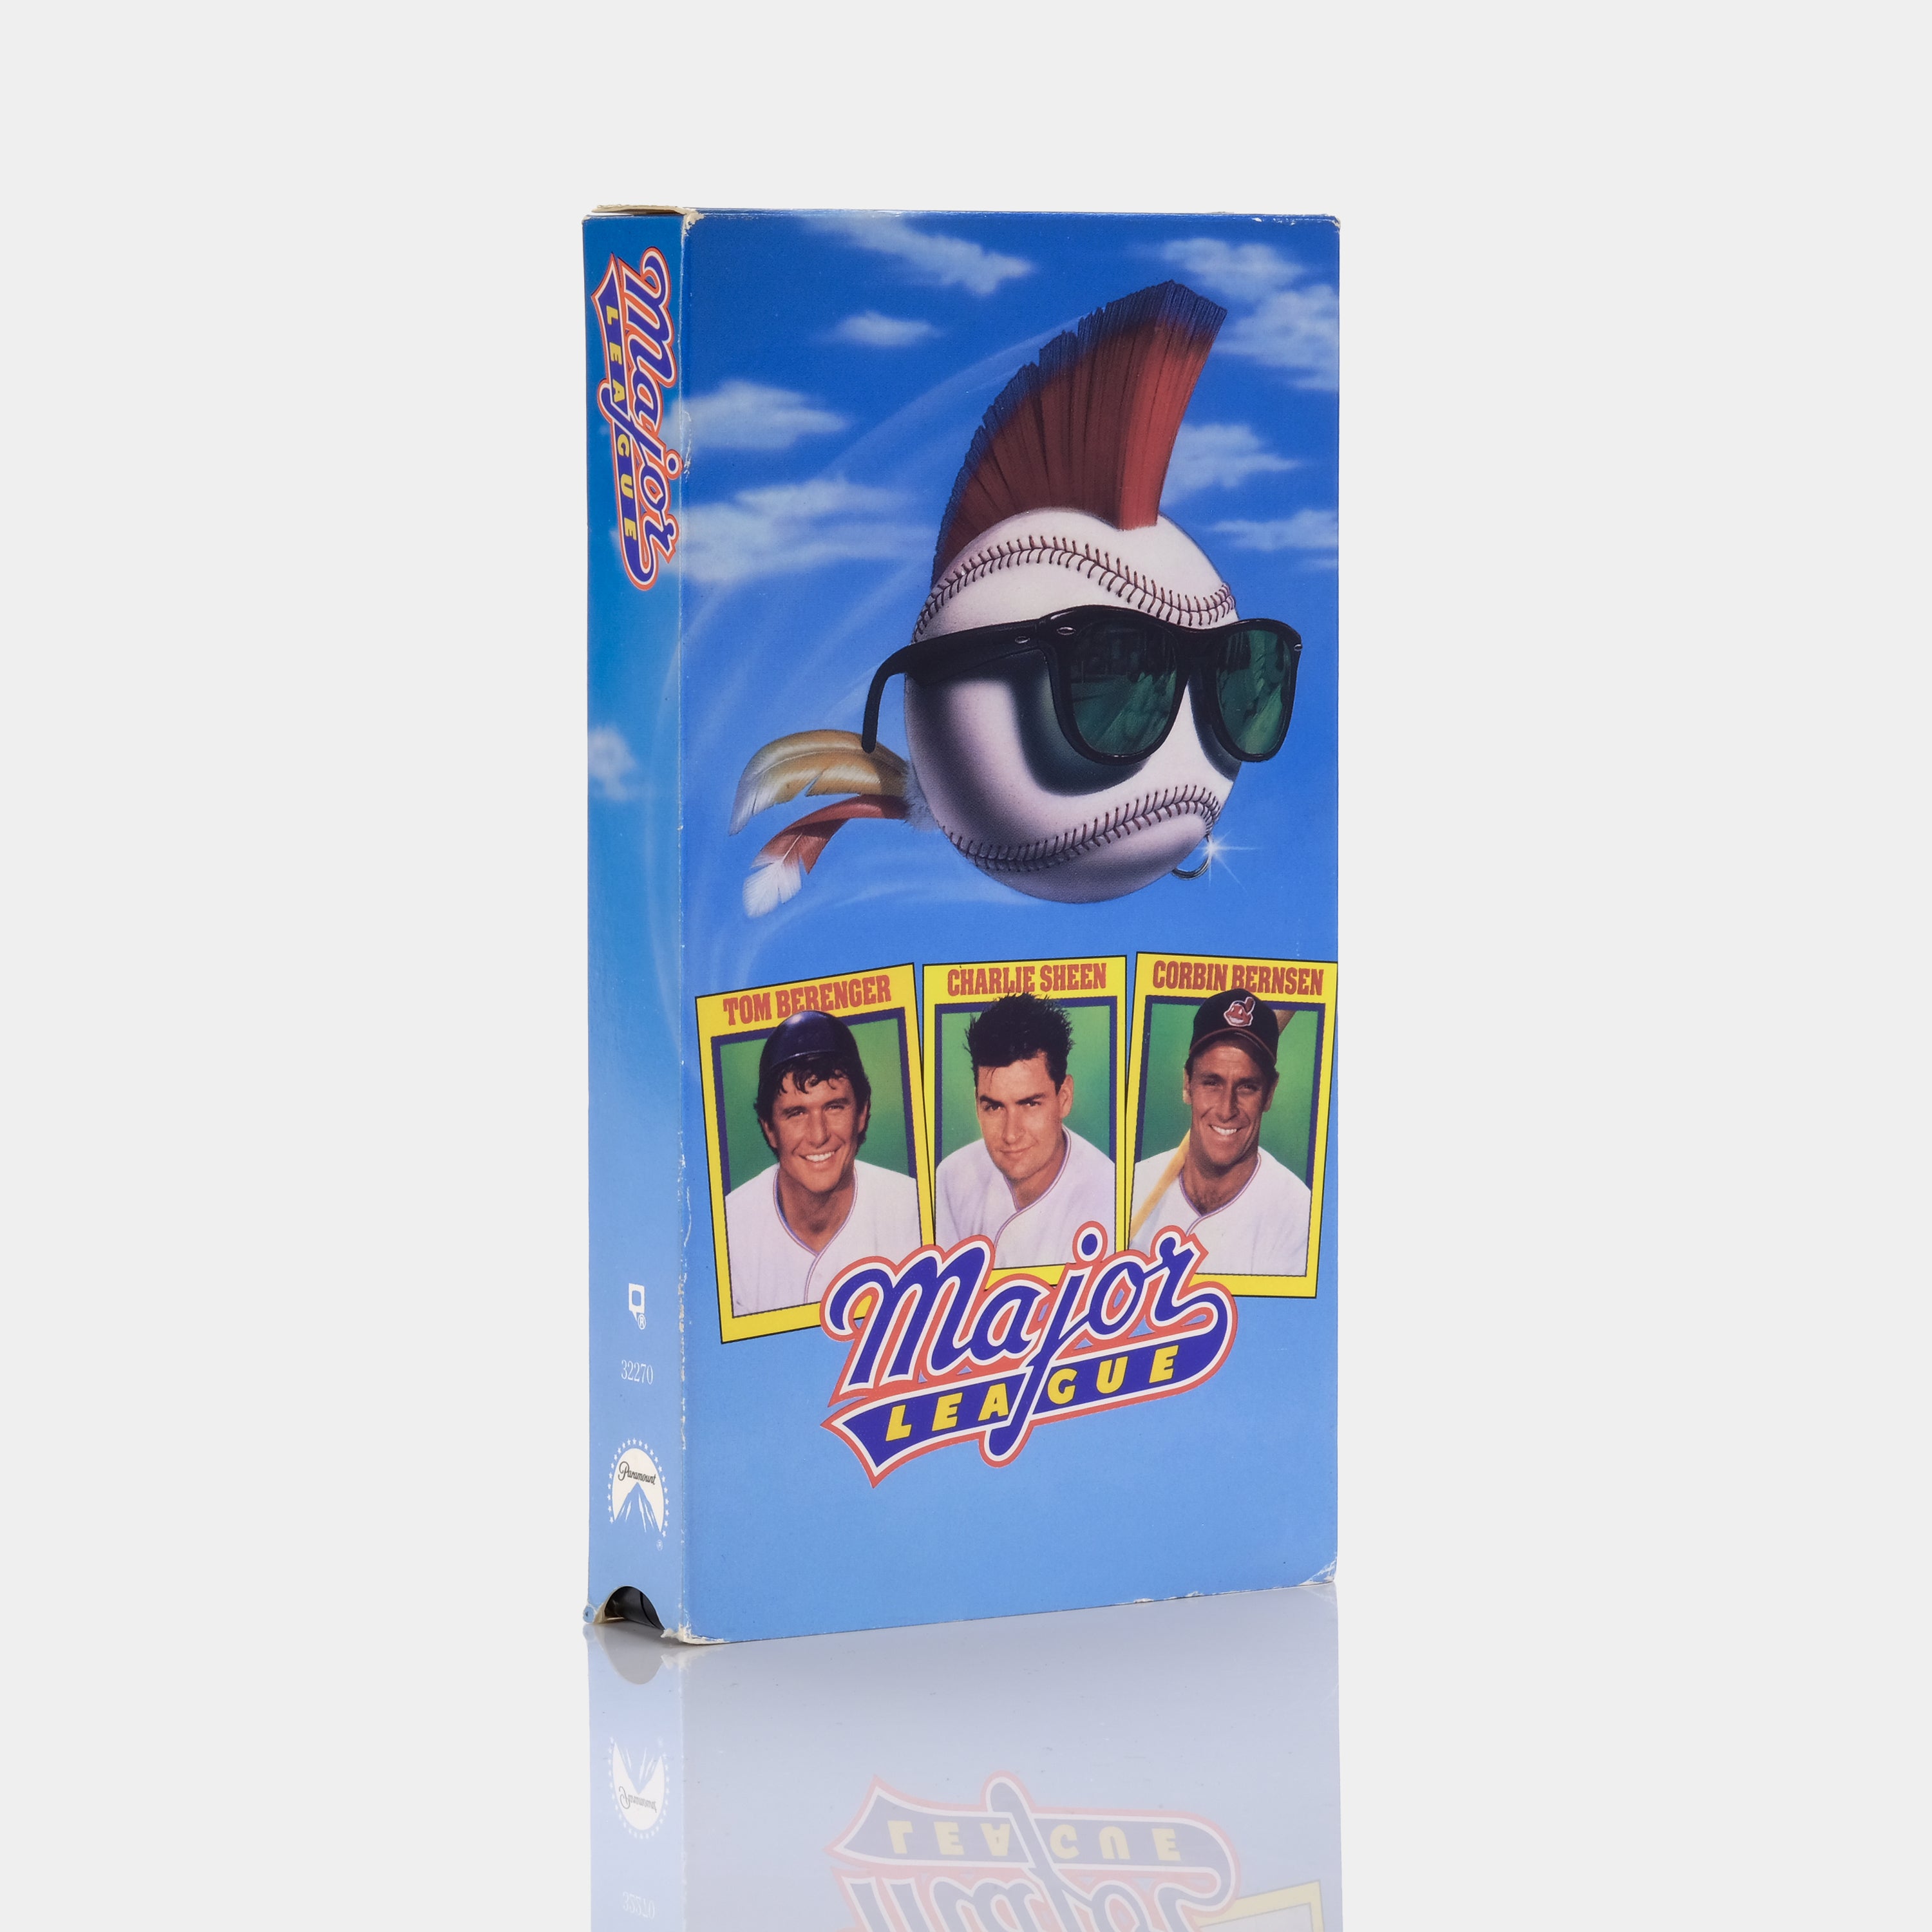 Major League VHS Tape